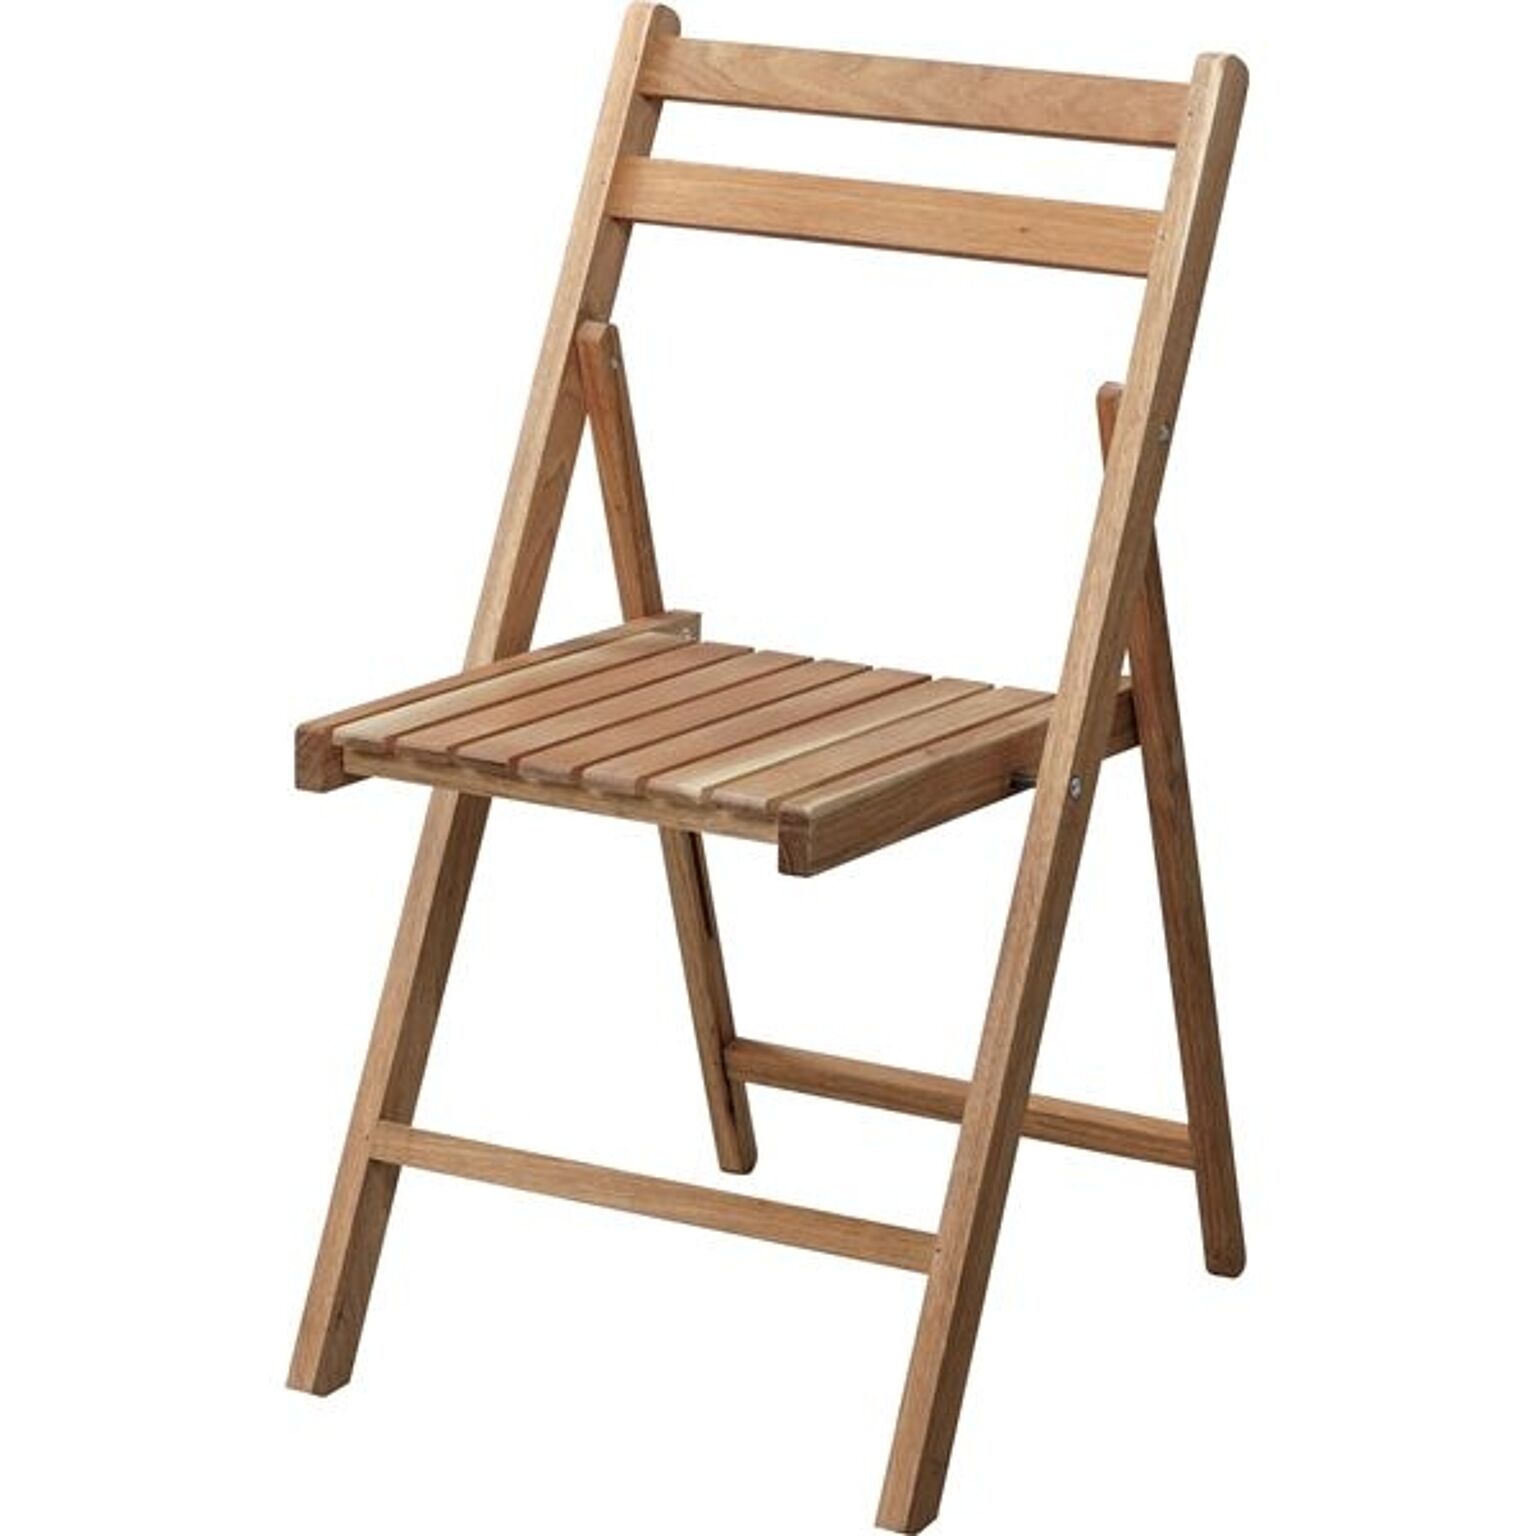 折りたたみ椅子 アウトドアチェア 幅42cm ナチュラル 木製 軽量 フォールディングチェア 室内 屋外 ガーデニング ベランダ